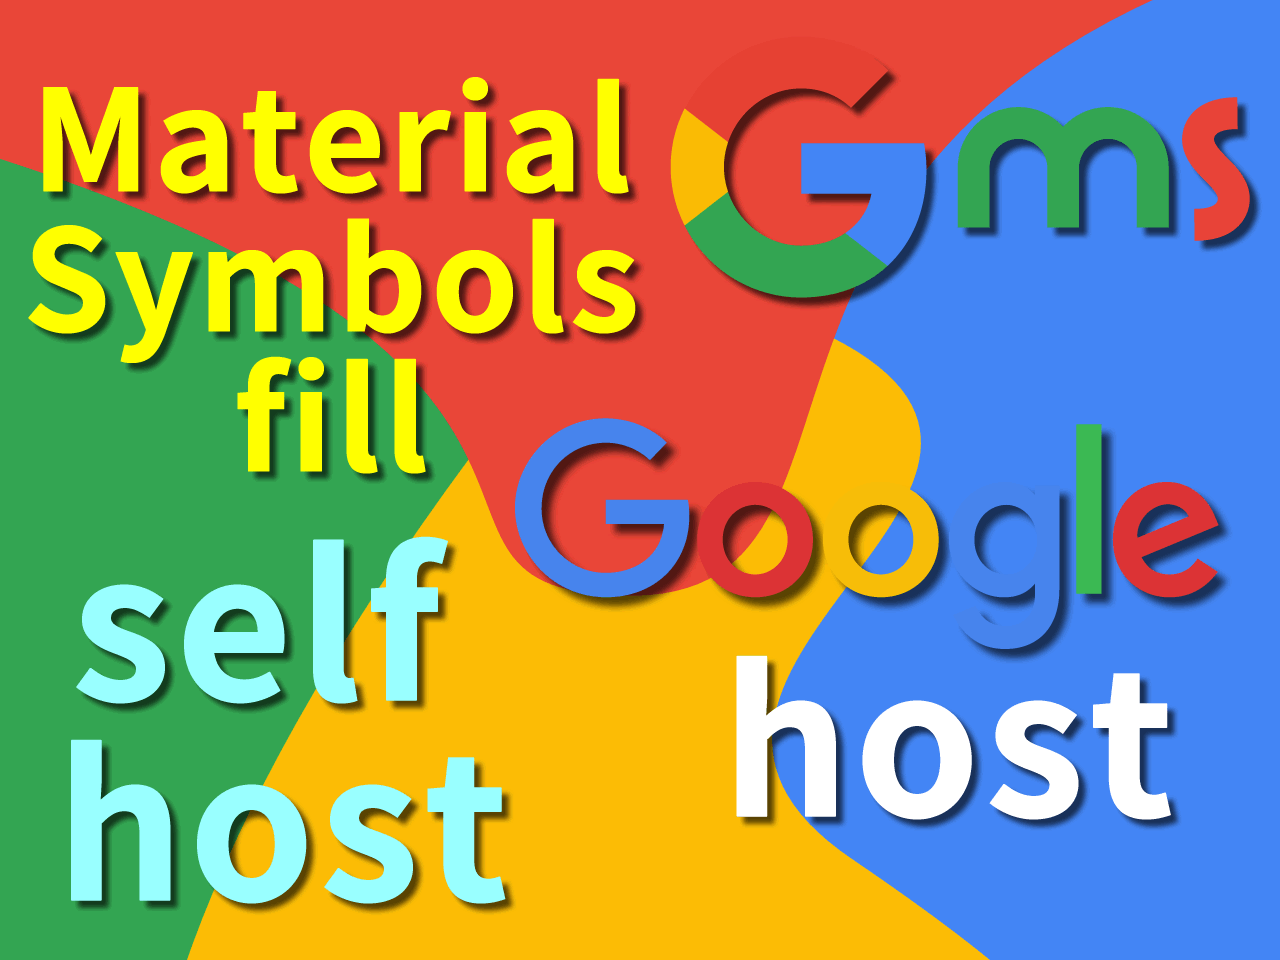 Google Material Symbols最短手順 可変フォントFILL(塗りつぶし) 太字細字あり Googleホスト & セルフ-ホスト CSS アイコンファイル 